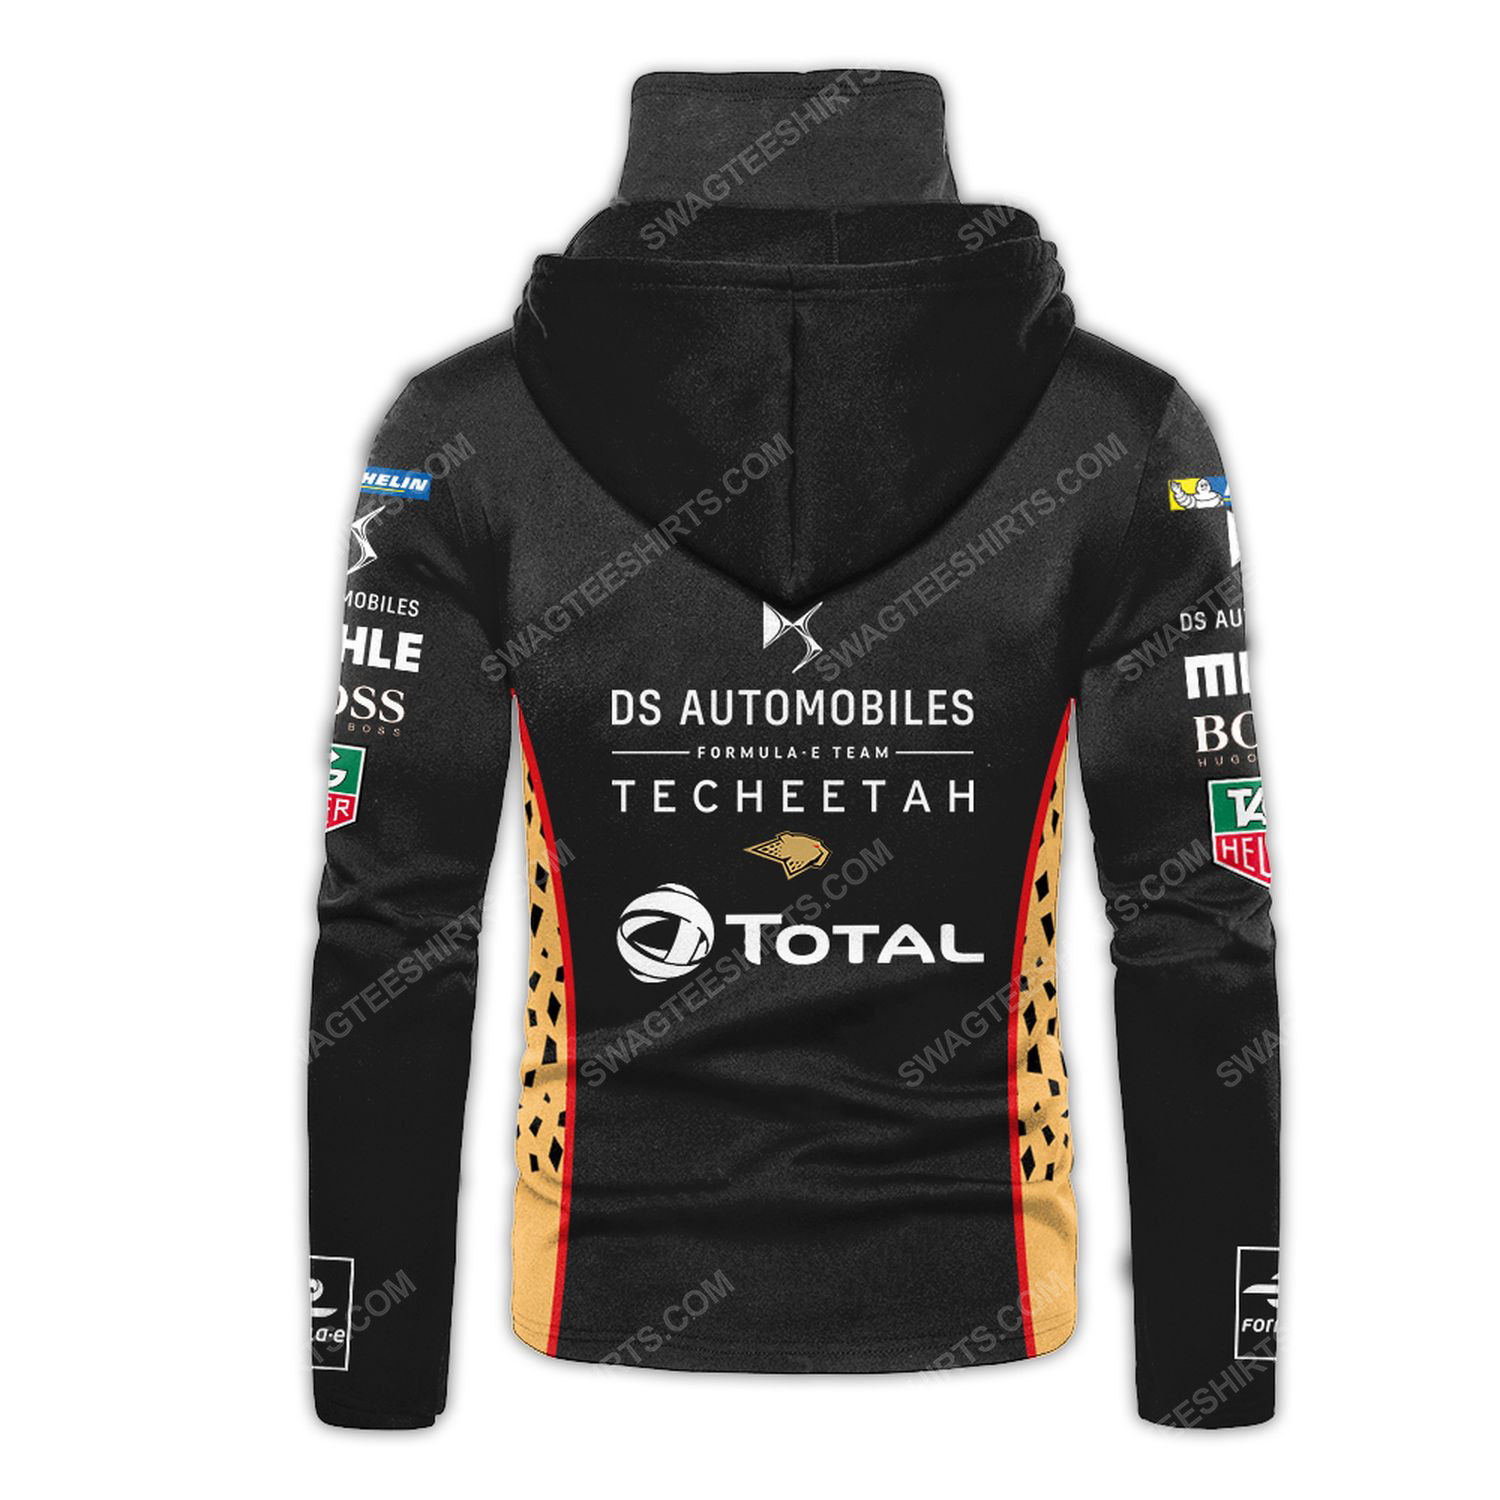 Custom ds automobiles racing team motorsport full printing hoodie mask - back